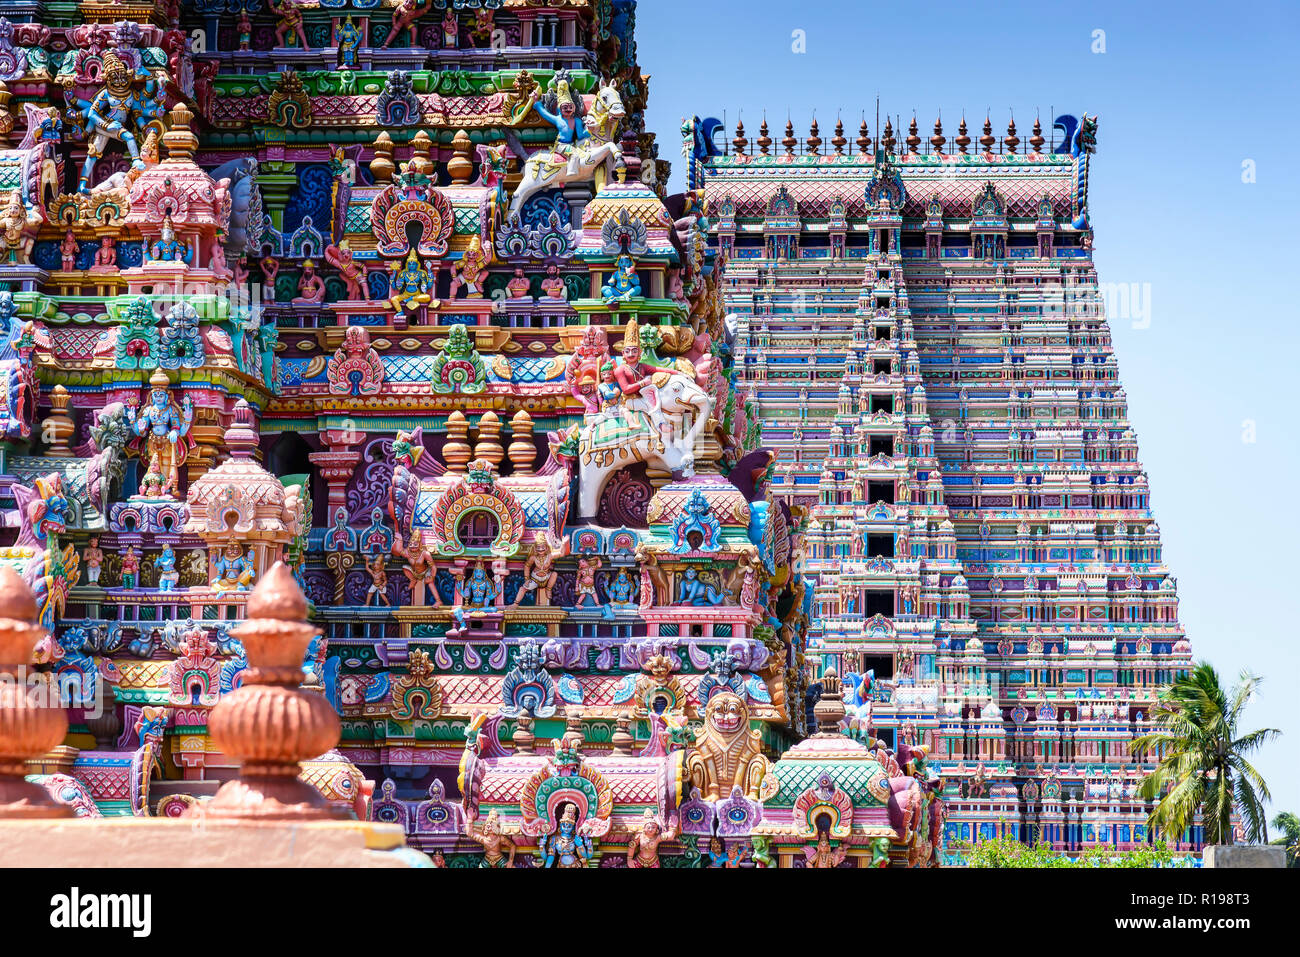 Au Sri Ranganathaswamy Temple Gopurams, Inde. Un Gopuram est une tour-porche monumental, habituellement orné, à l'entrée d'un temple hindou Banque D'Images